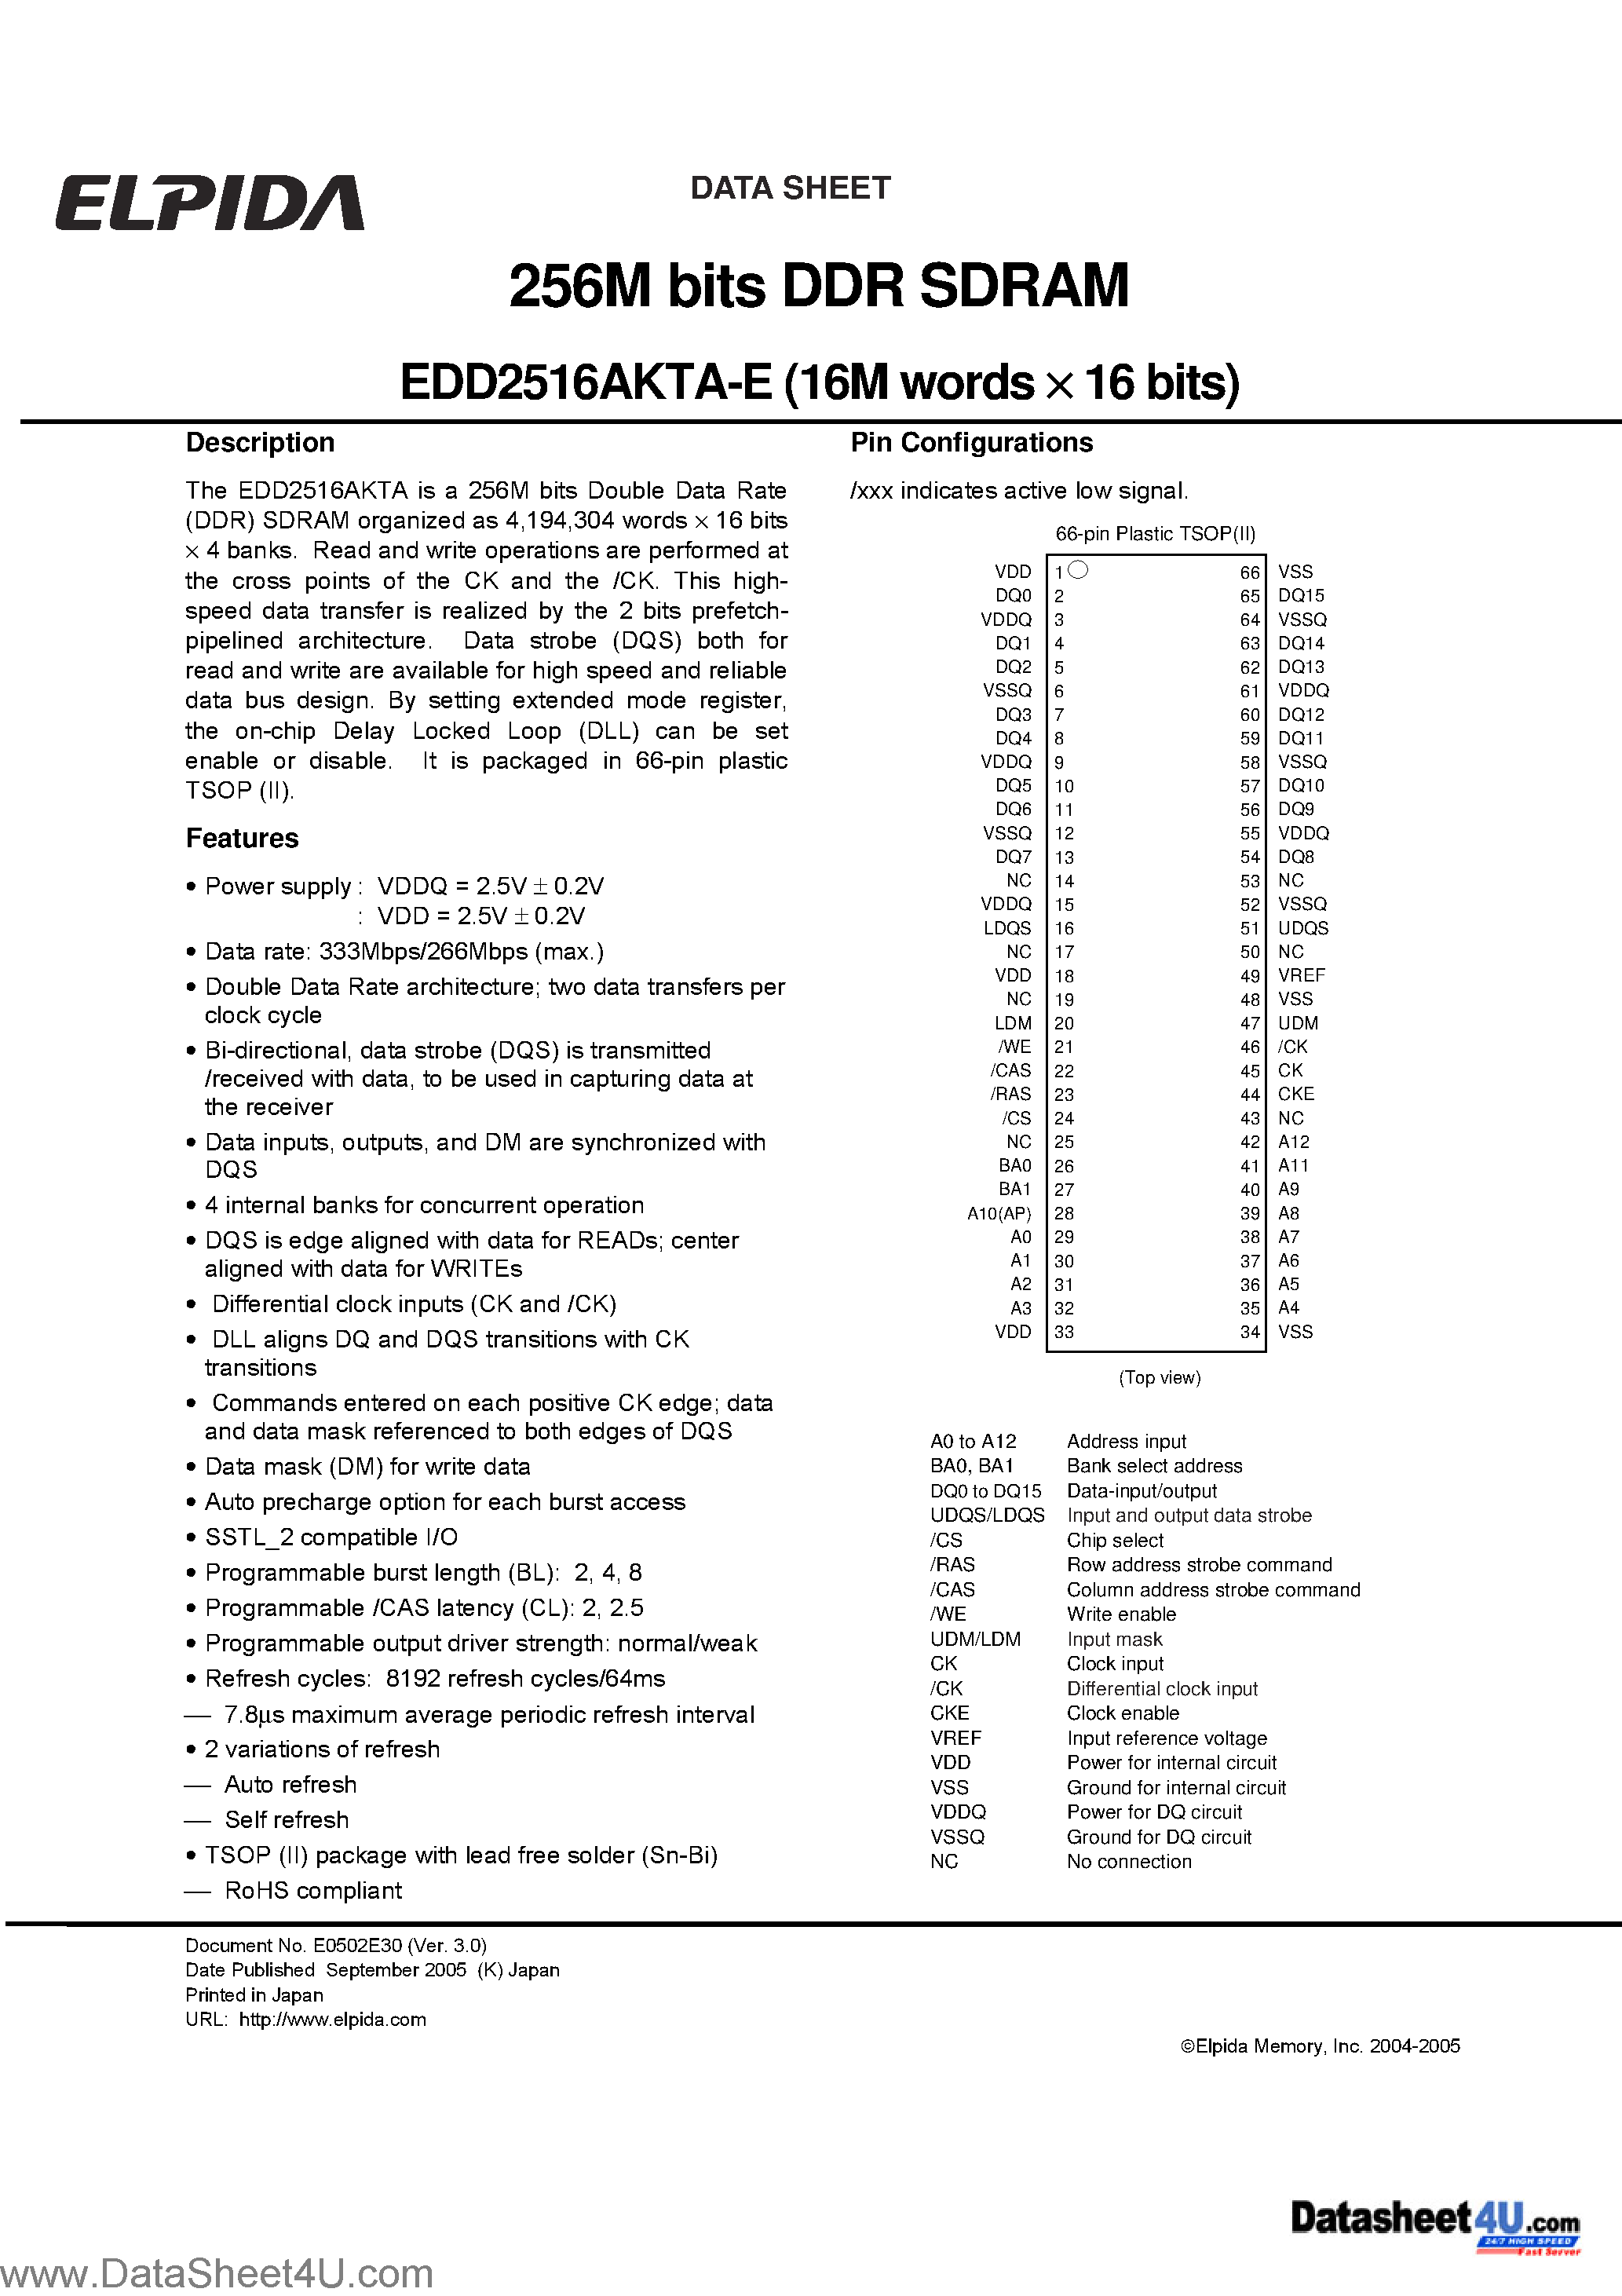 Даташит EDD2516AKTA-E - 256M bits DDR SDRAM (16M words x16 bits DDR400) страница 1